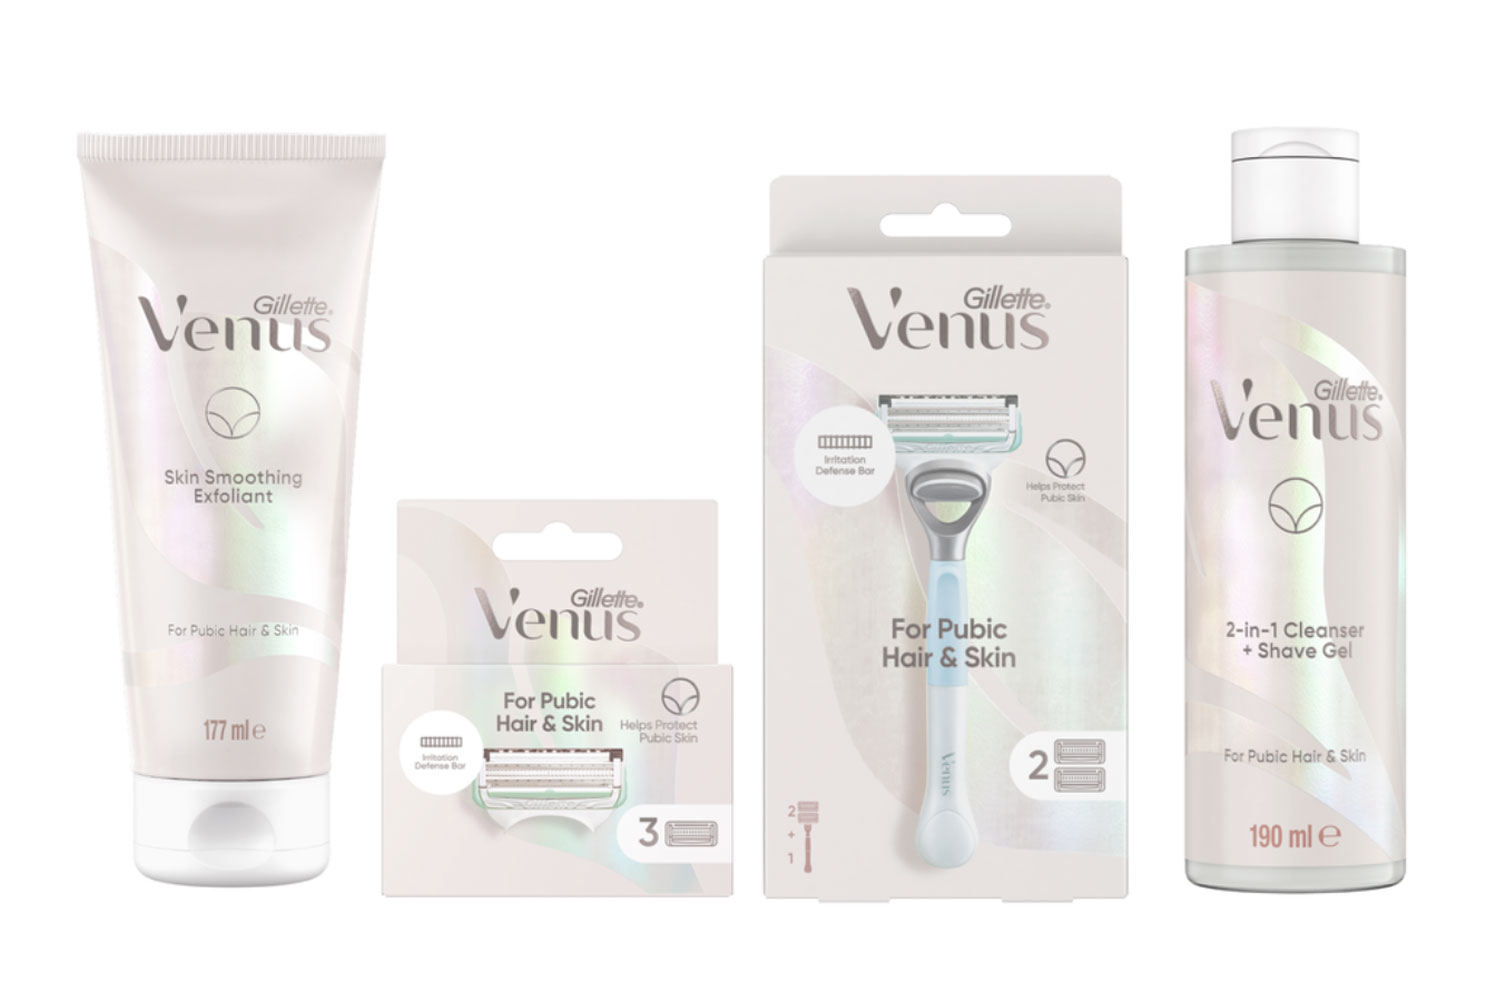 Venus Pubic Hair & Skin range